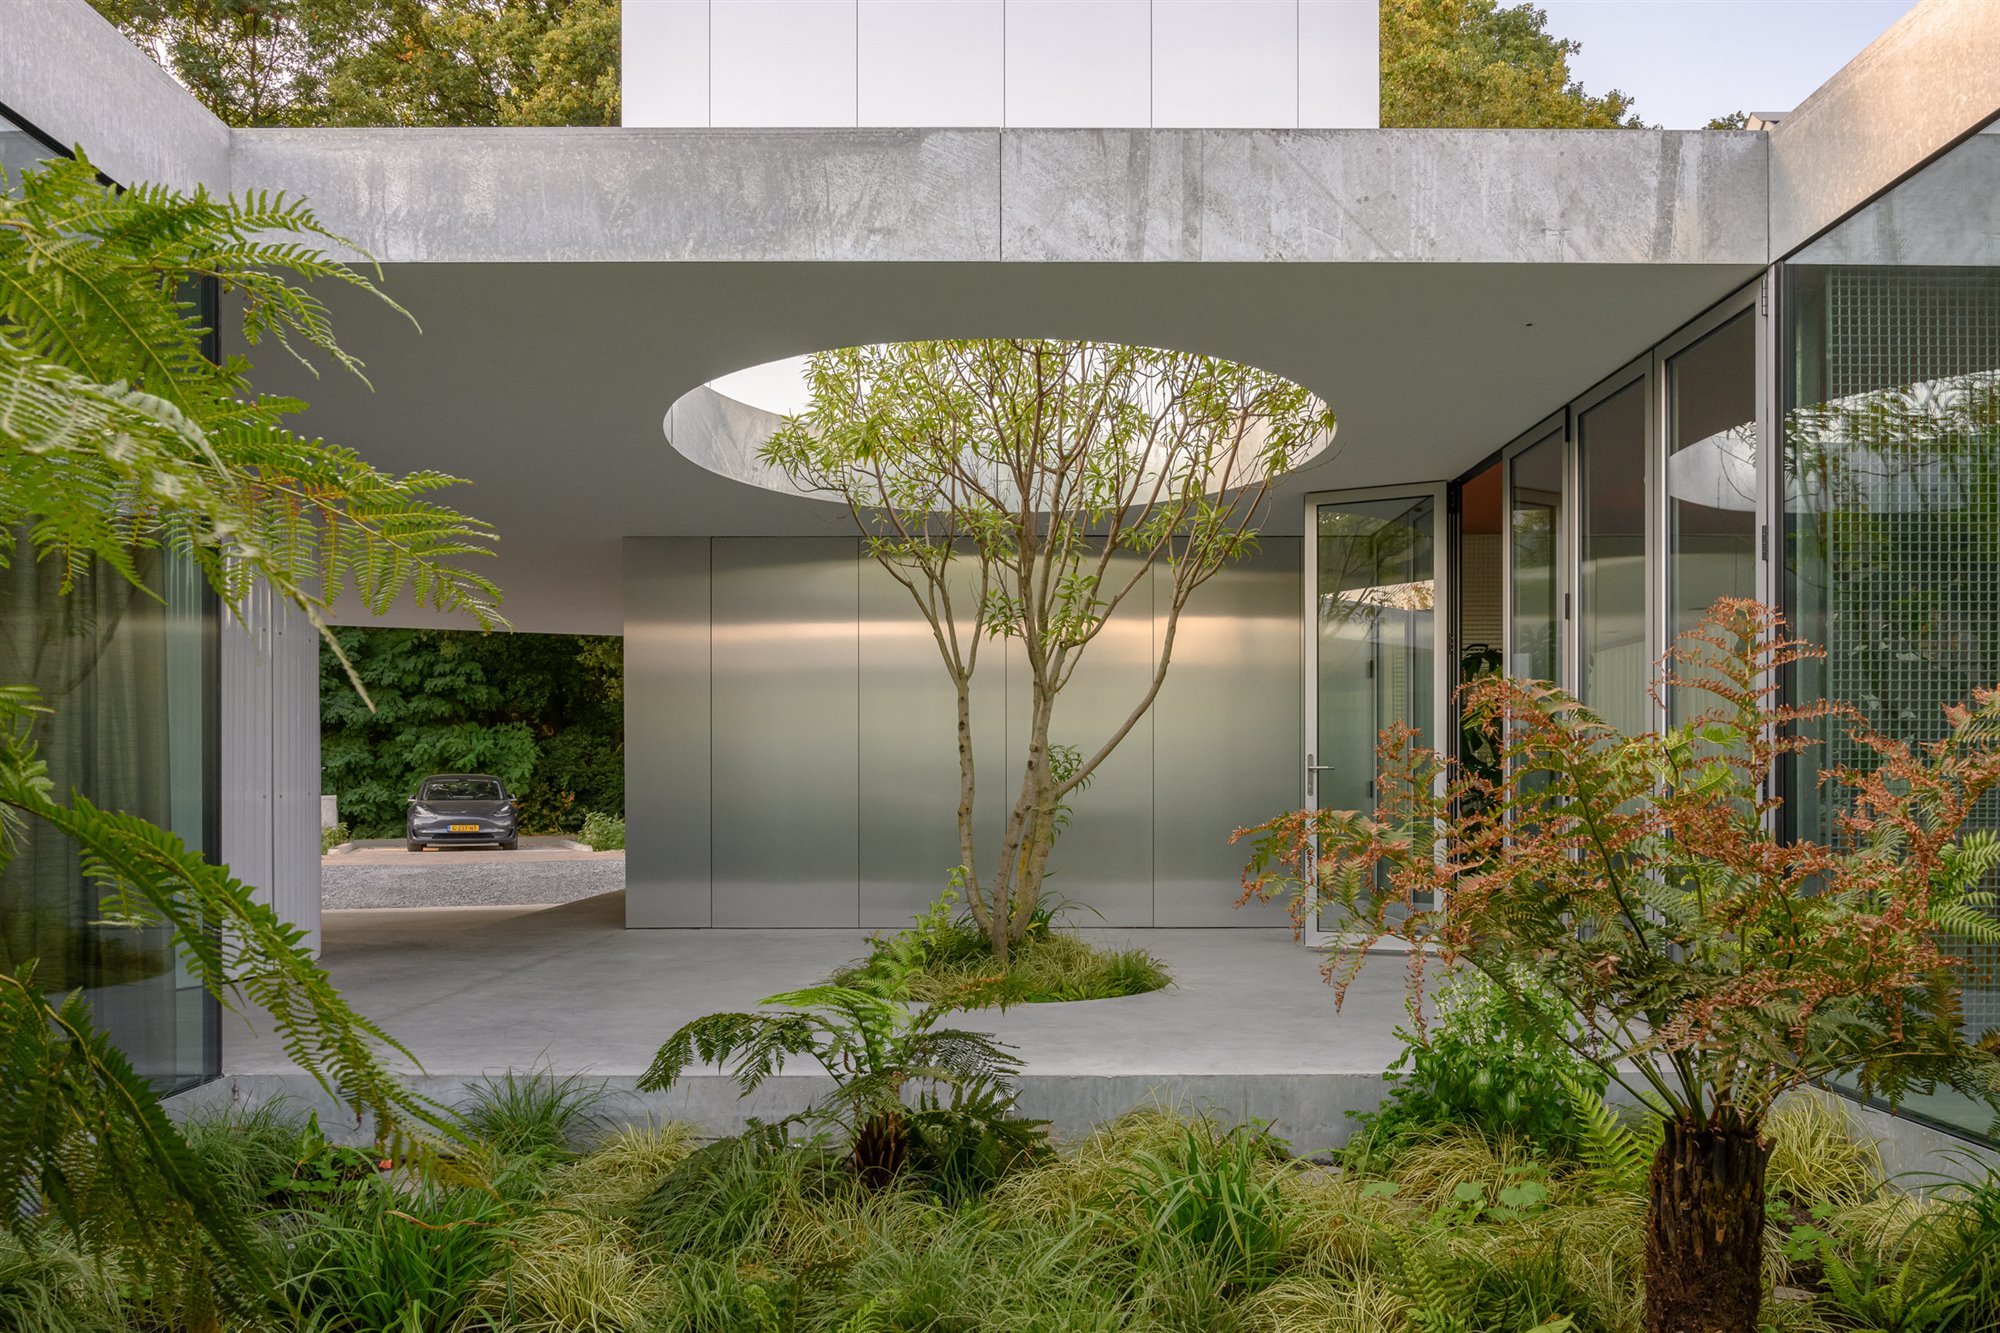 Casa en Eindhoven con fachada metalica lucernario con jardin